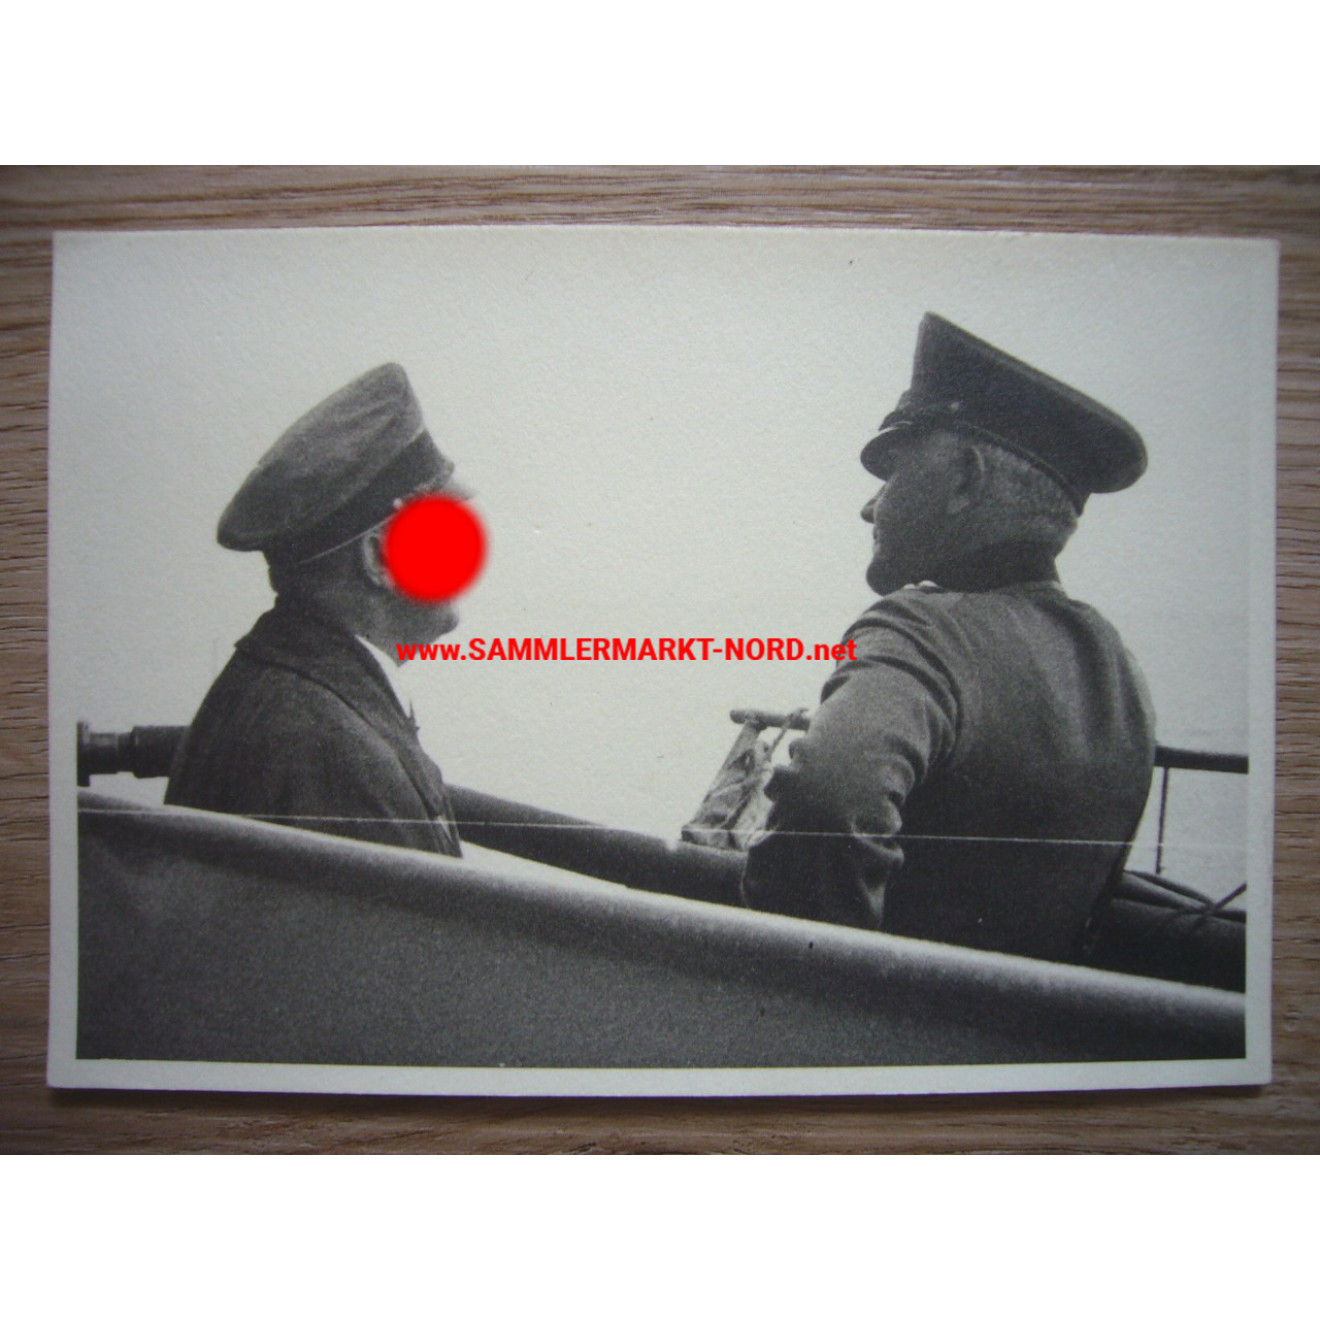 Battleship Deutschland - Adolf Hitler & the Reich Minister of War von Blomberg